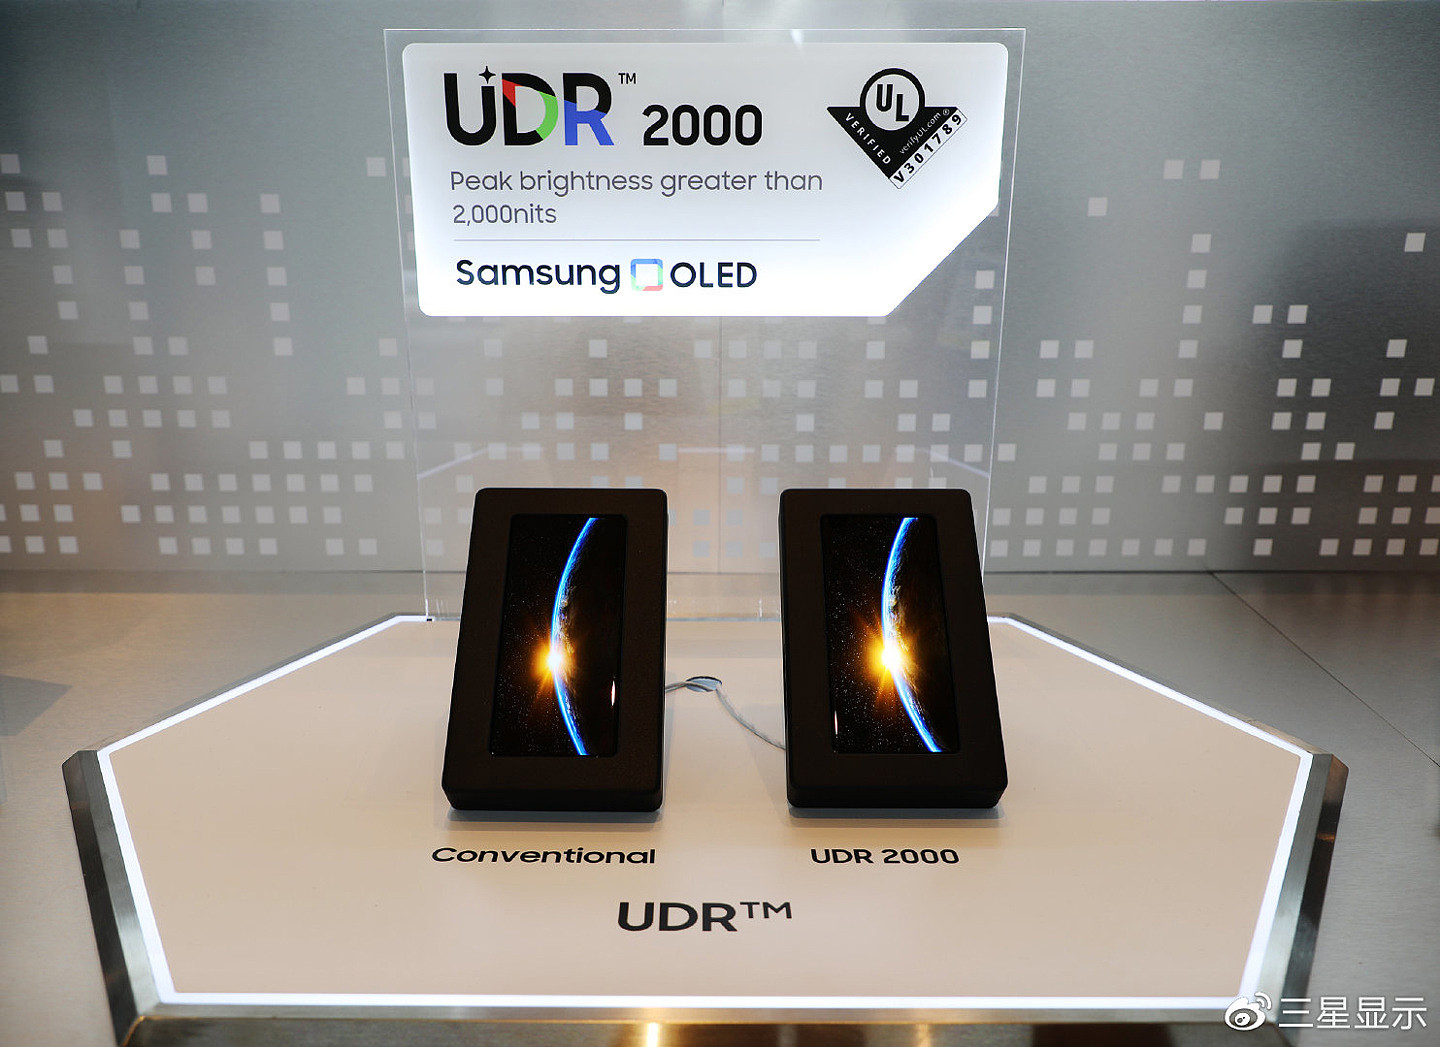 三星展示亮度高达 2000 尼特的智能手机 OLED 屏幕，获得 UDR 2000 认证 - 1